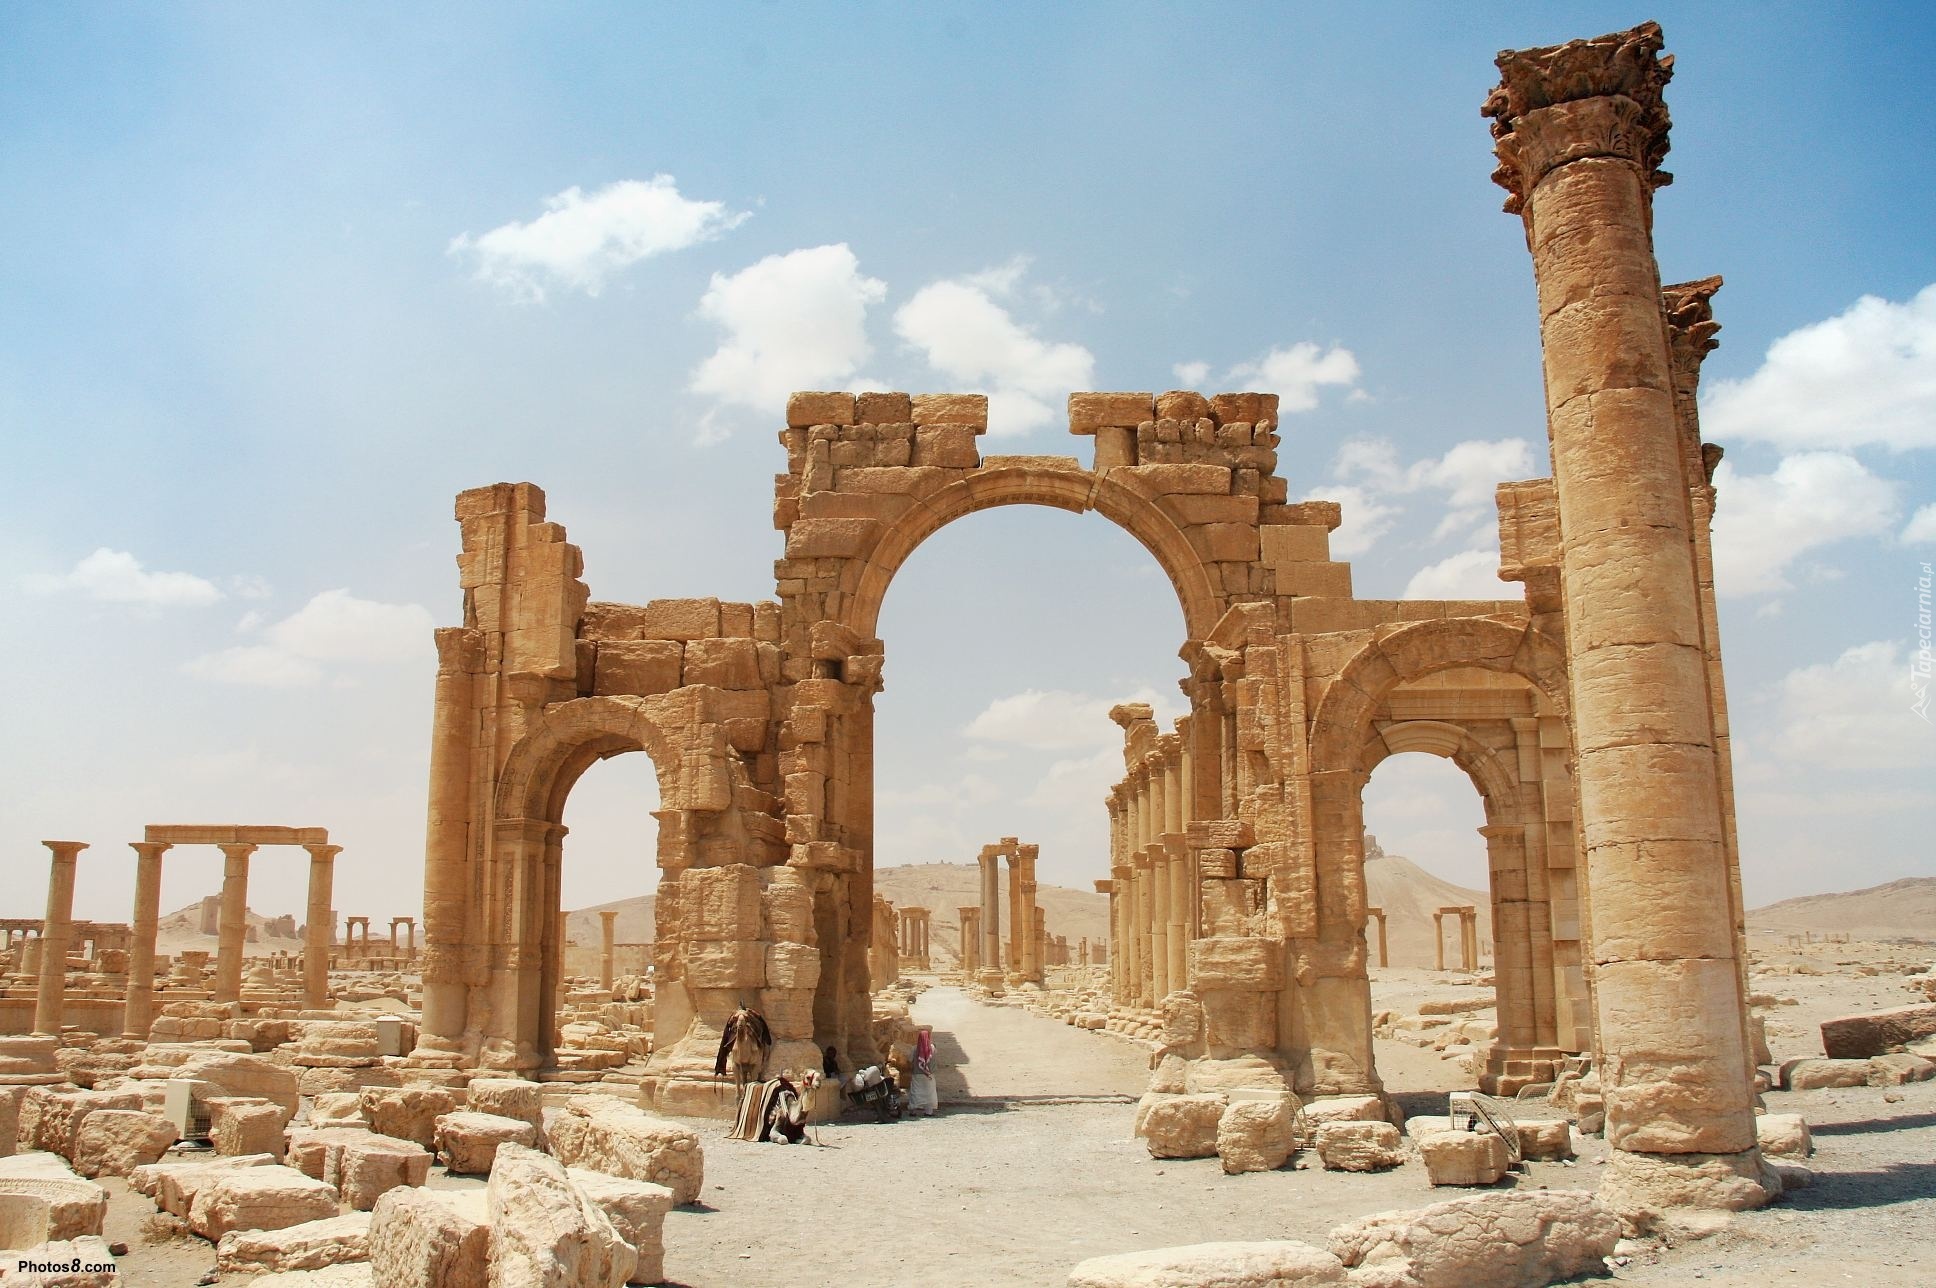 Ruiny, Palmyra, Syria